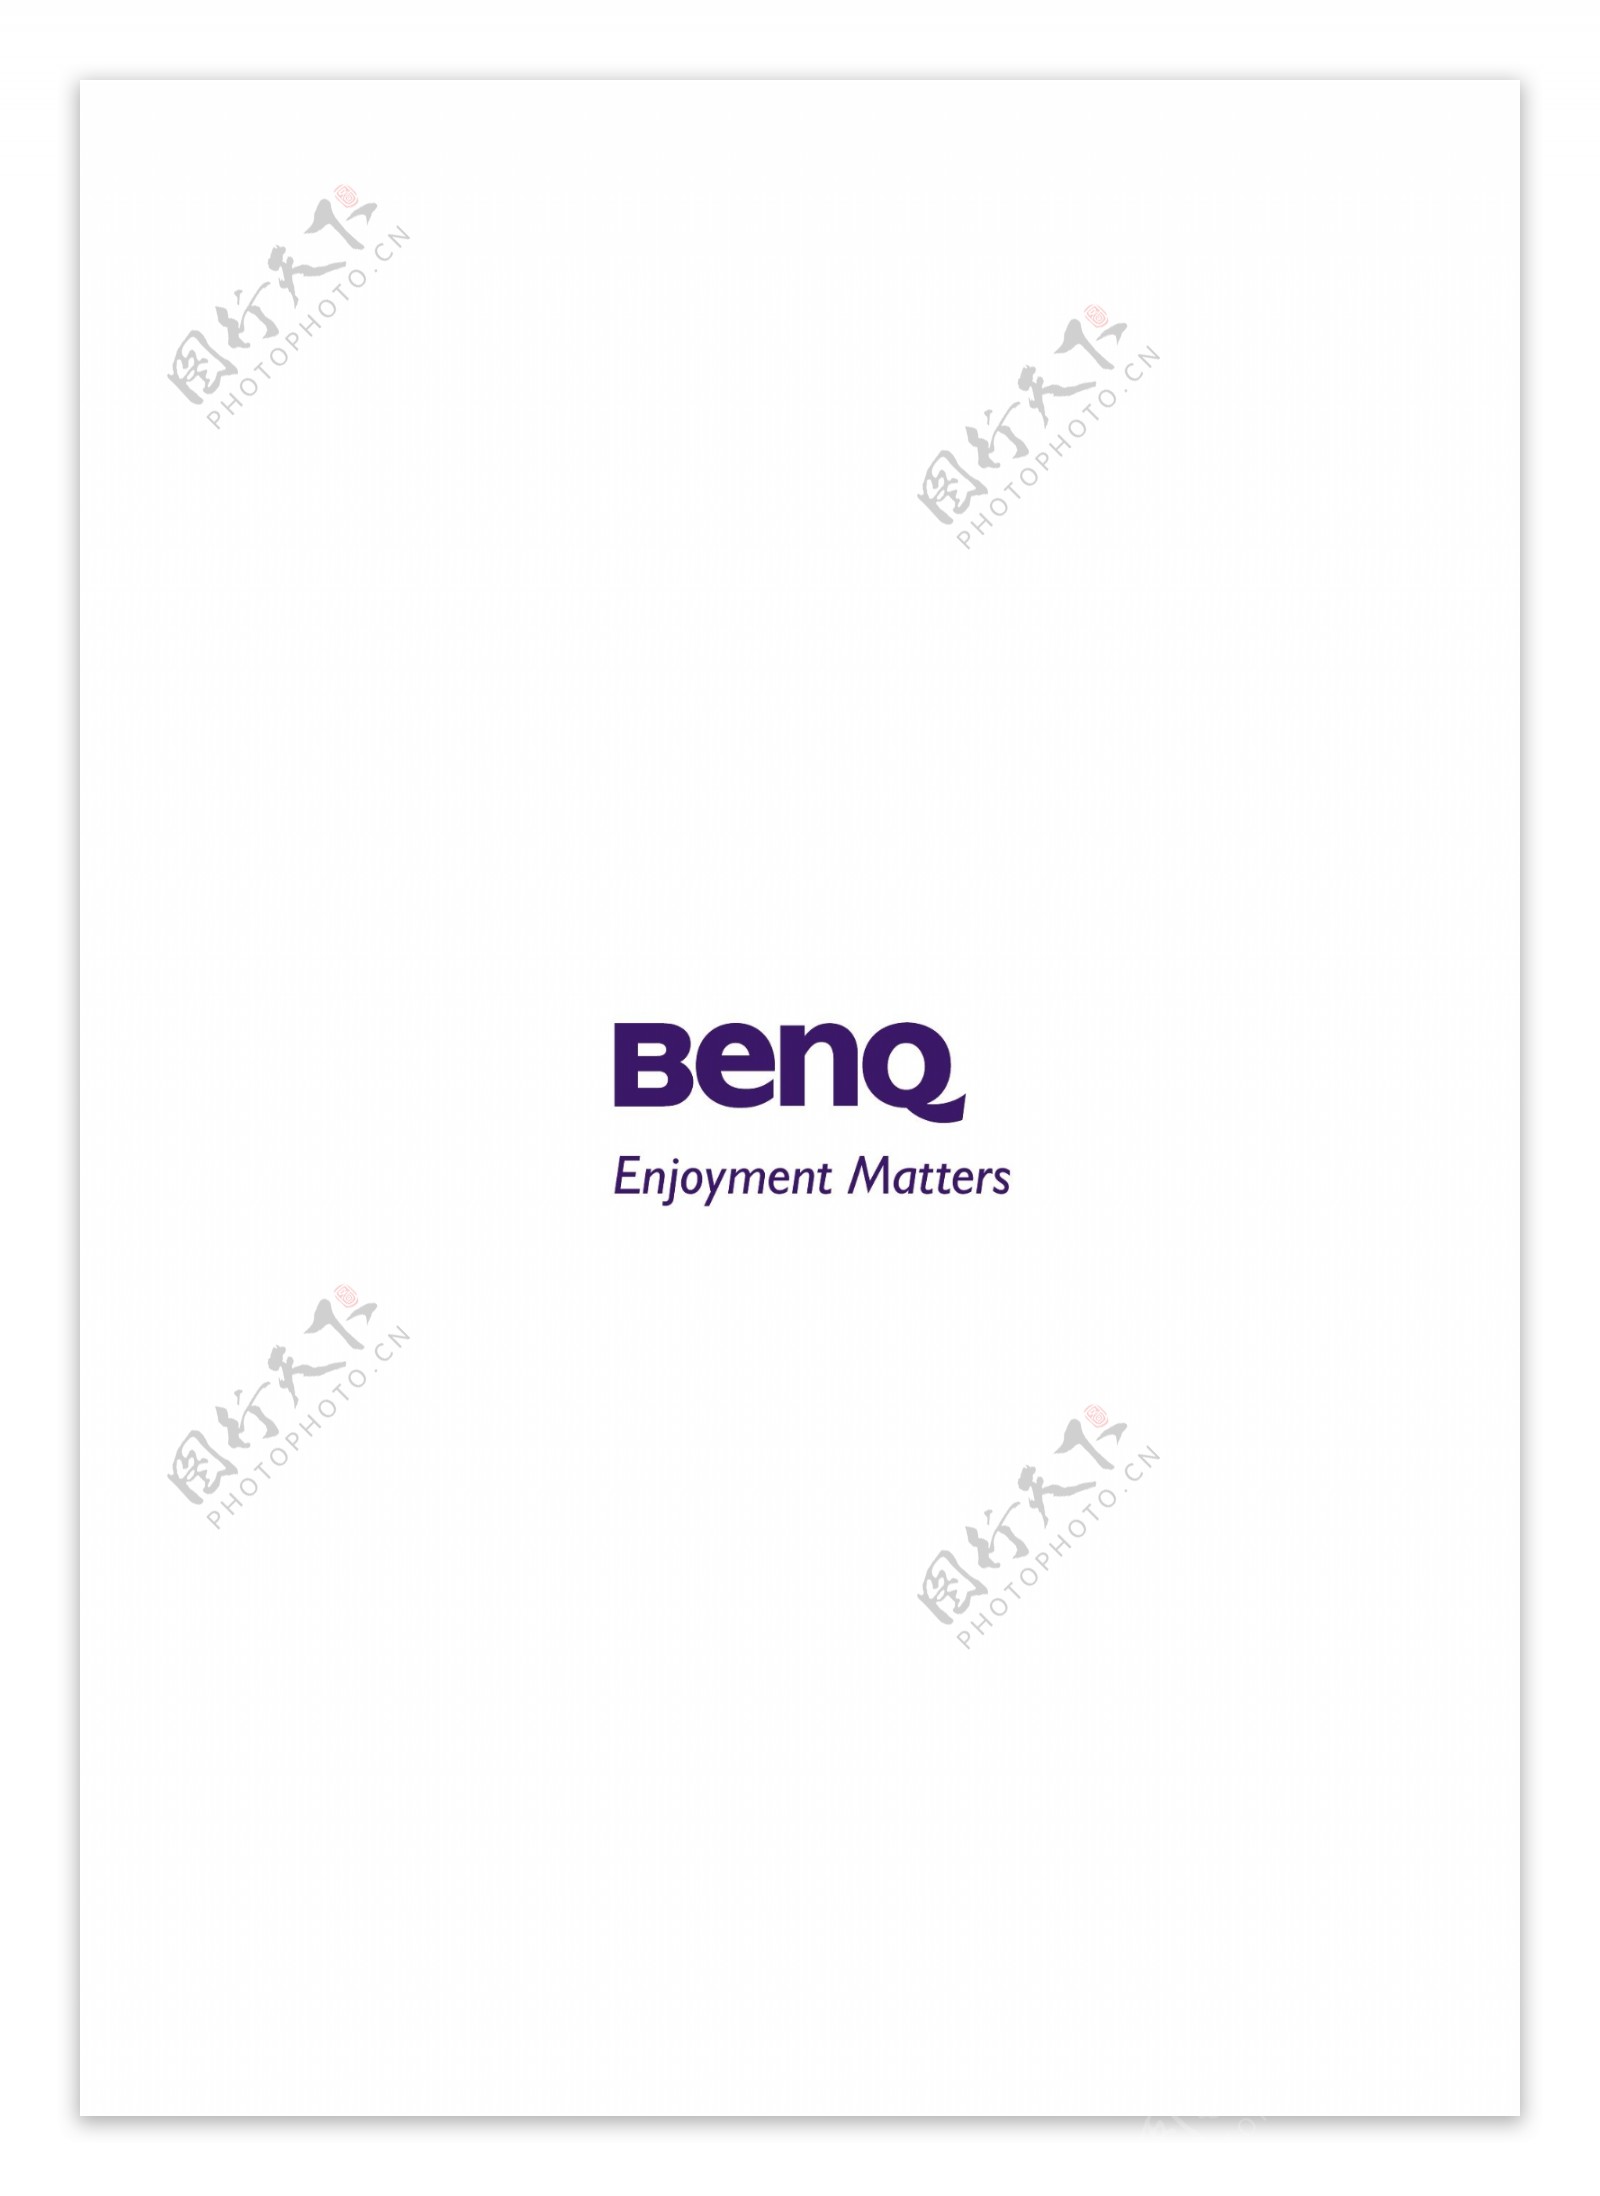 BenQlogo设计欣赏BenQ通讯公司LOGO下载标志设计欣赏